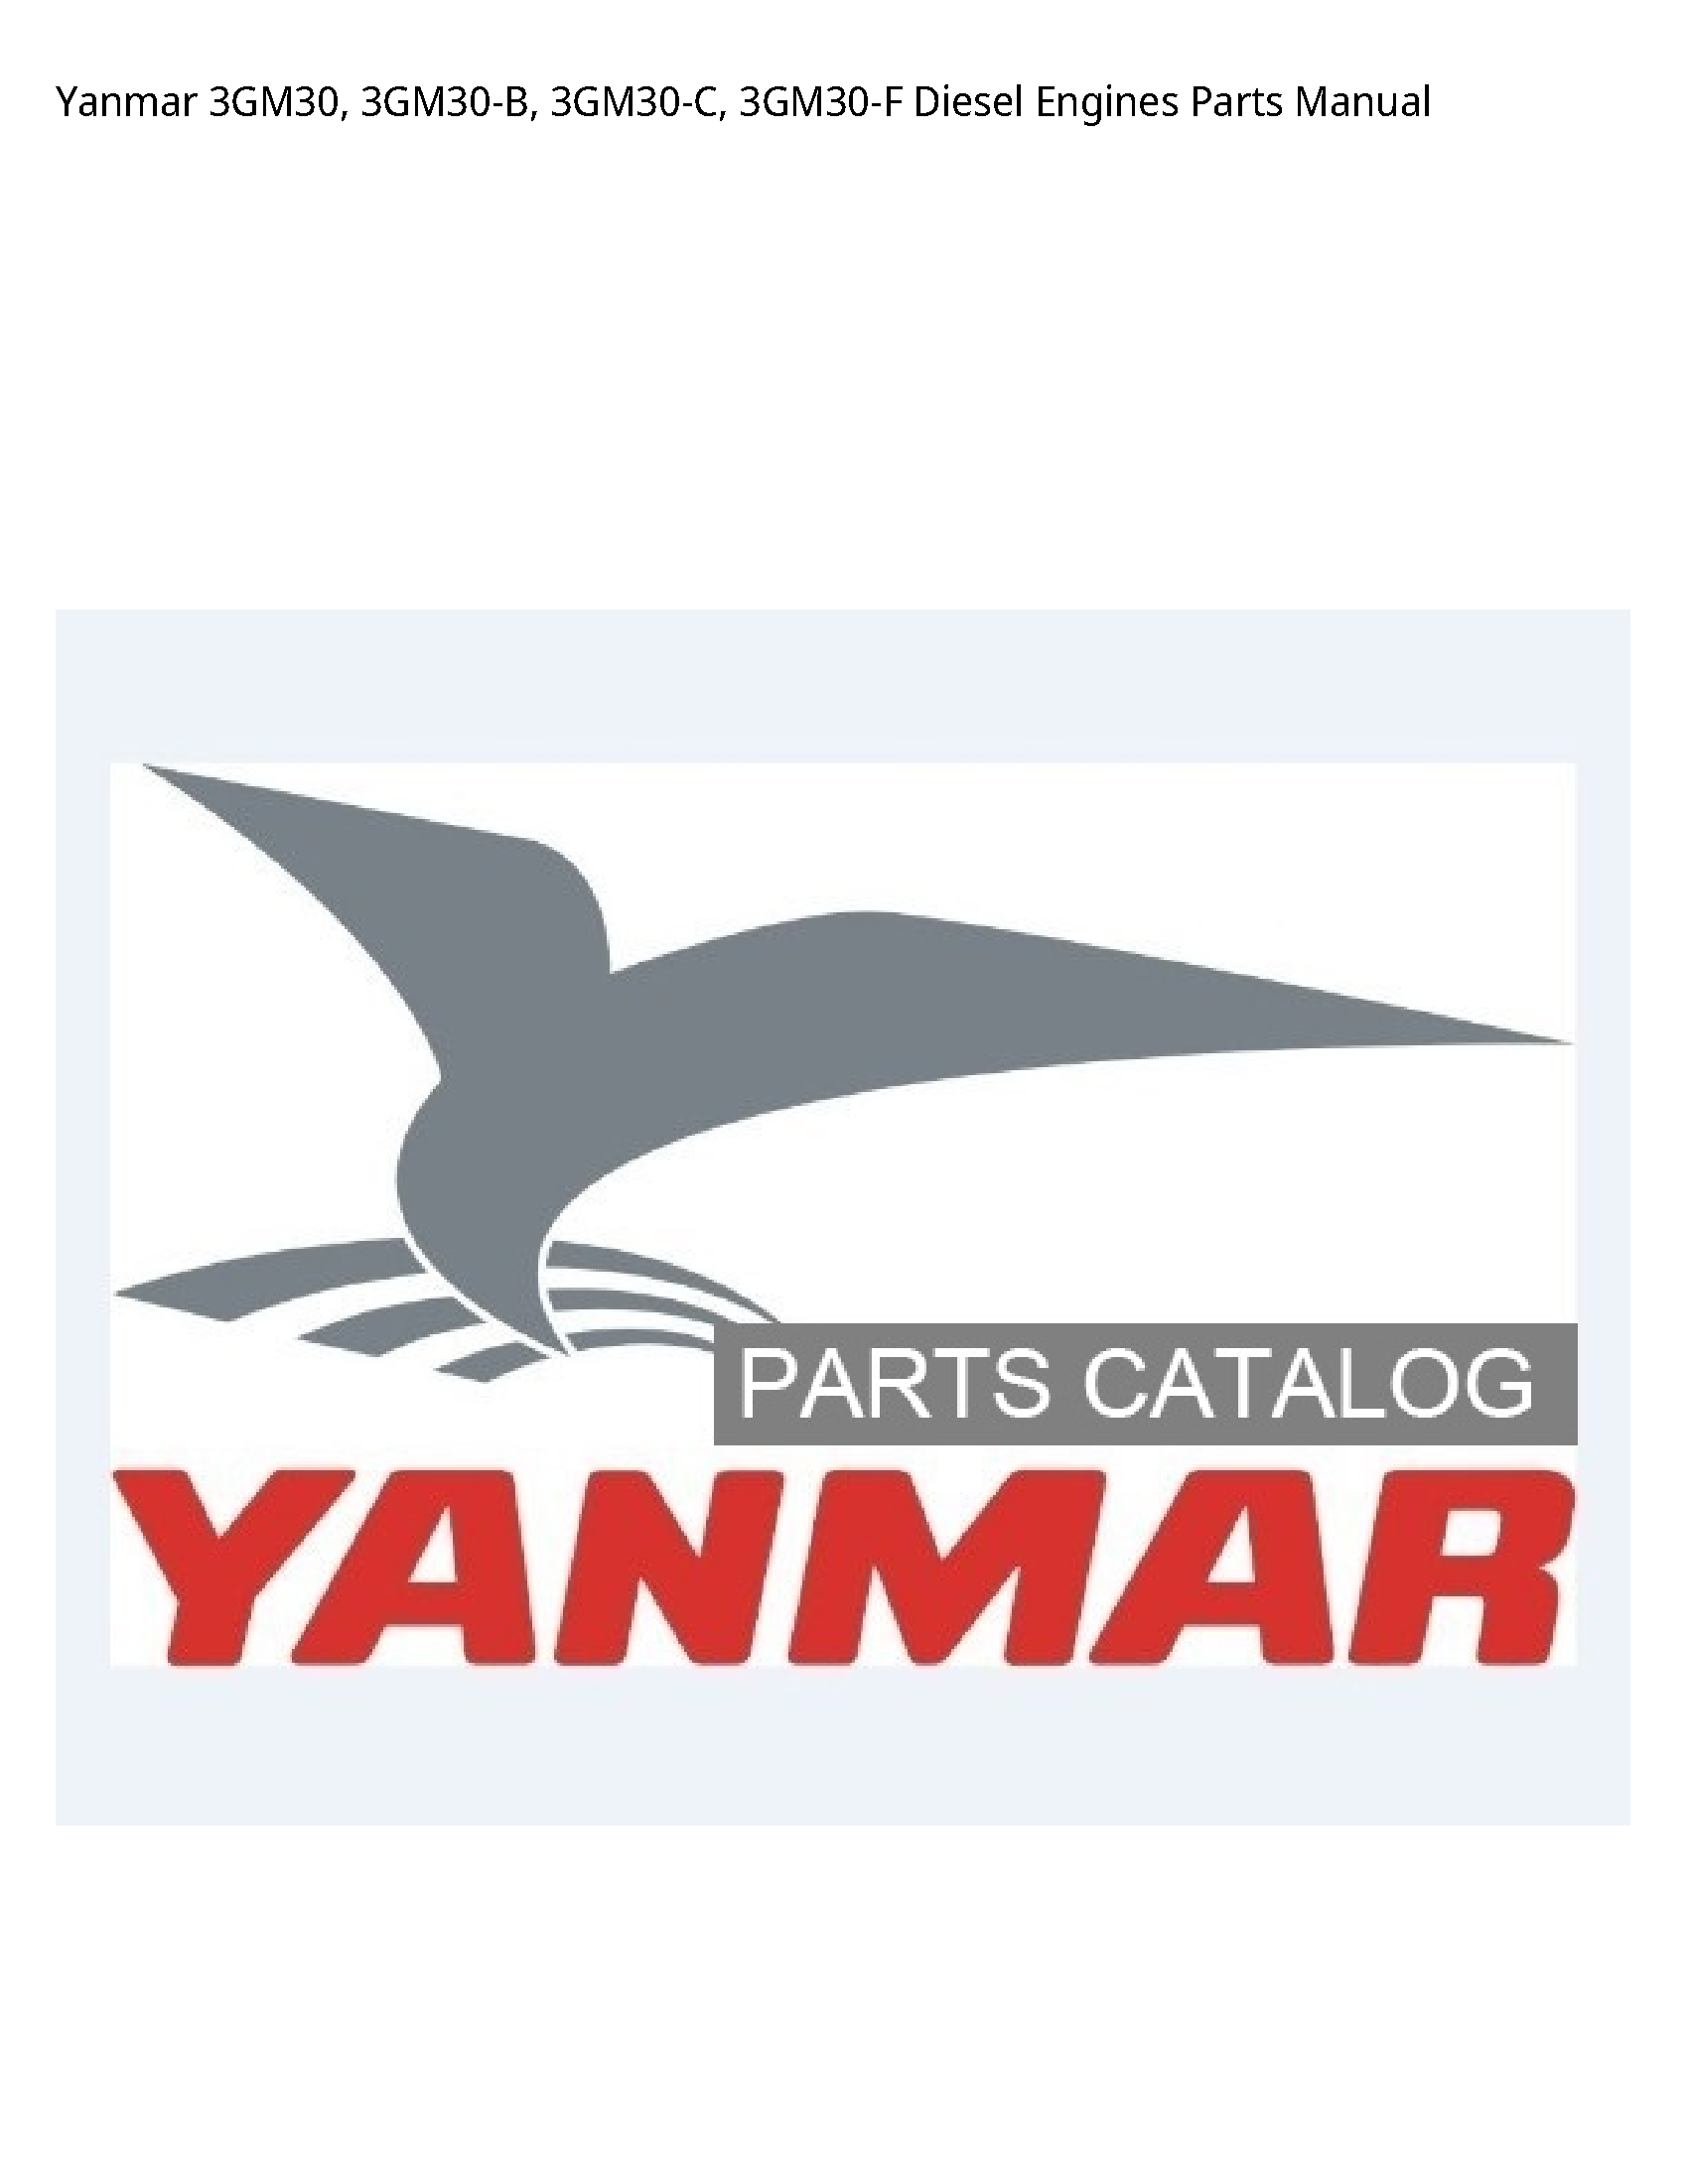 Yanmar 3GM30 Diesel Engines Parts manual